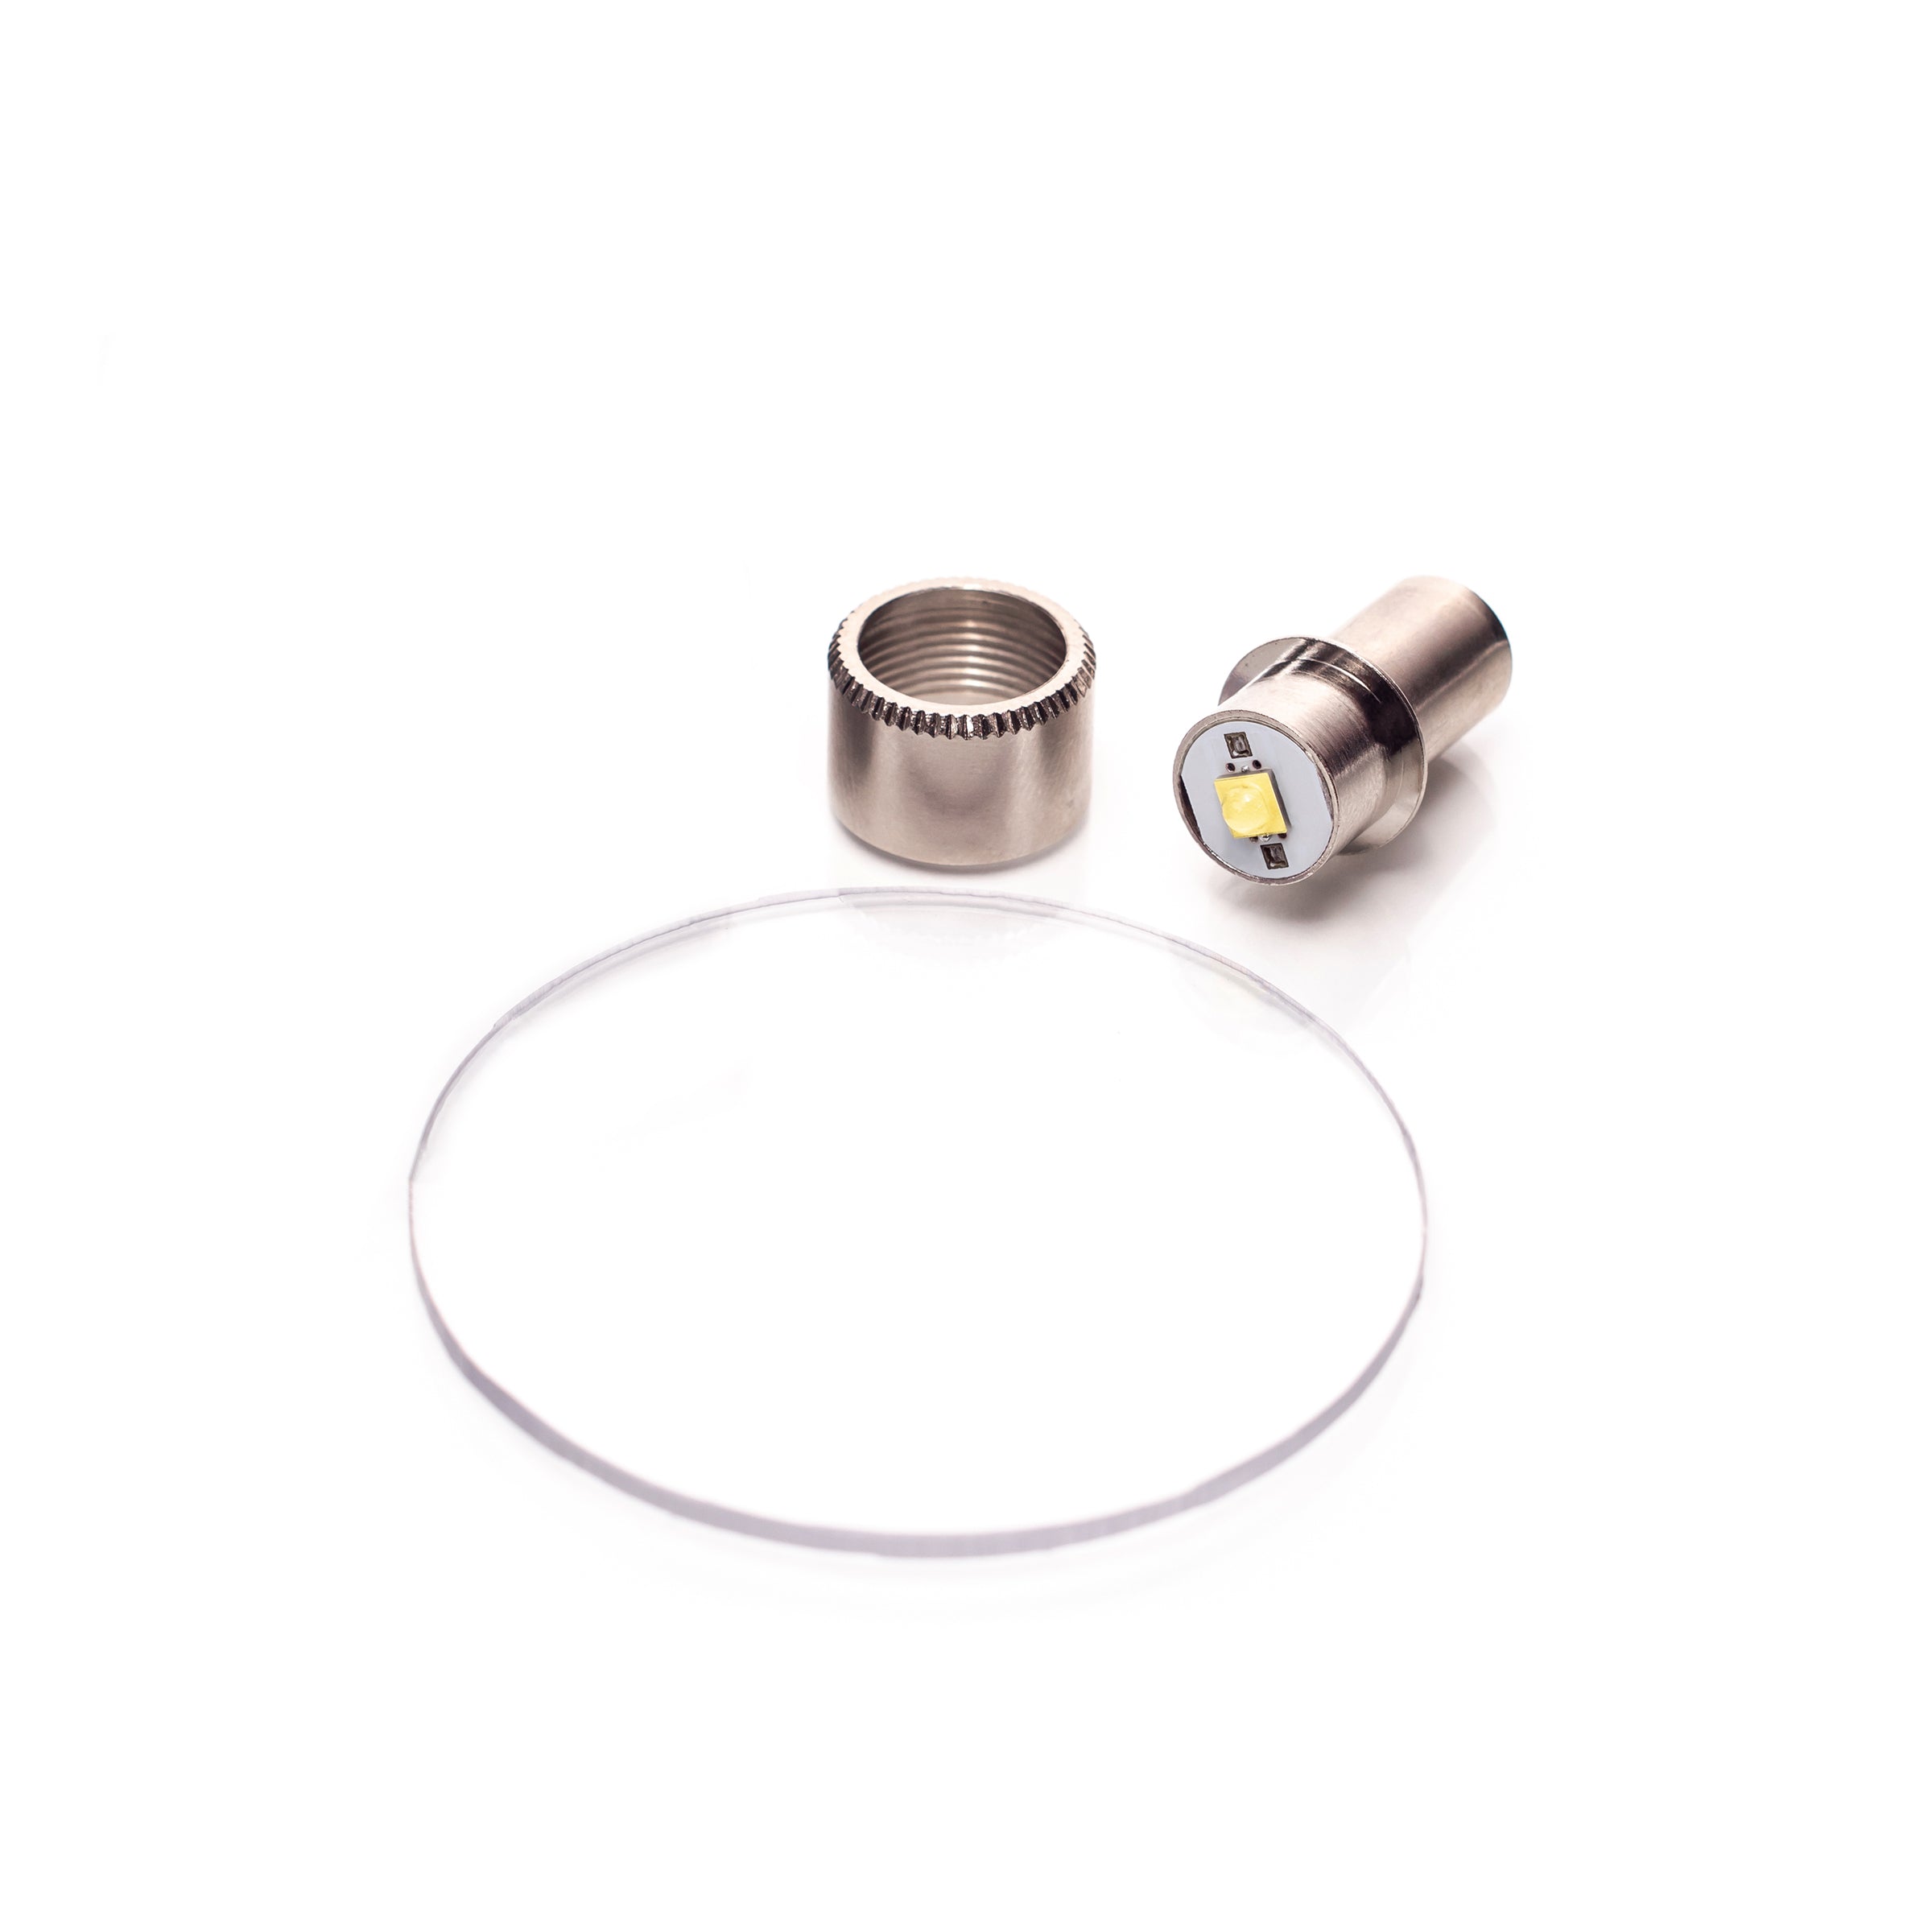 Lave om Etablering gas Litt Industries 350 Lumen Maglite LED Bulb & Lens KIT for 2-6 Cell